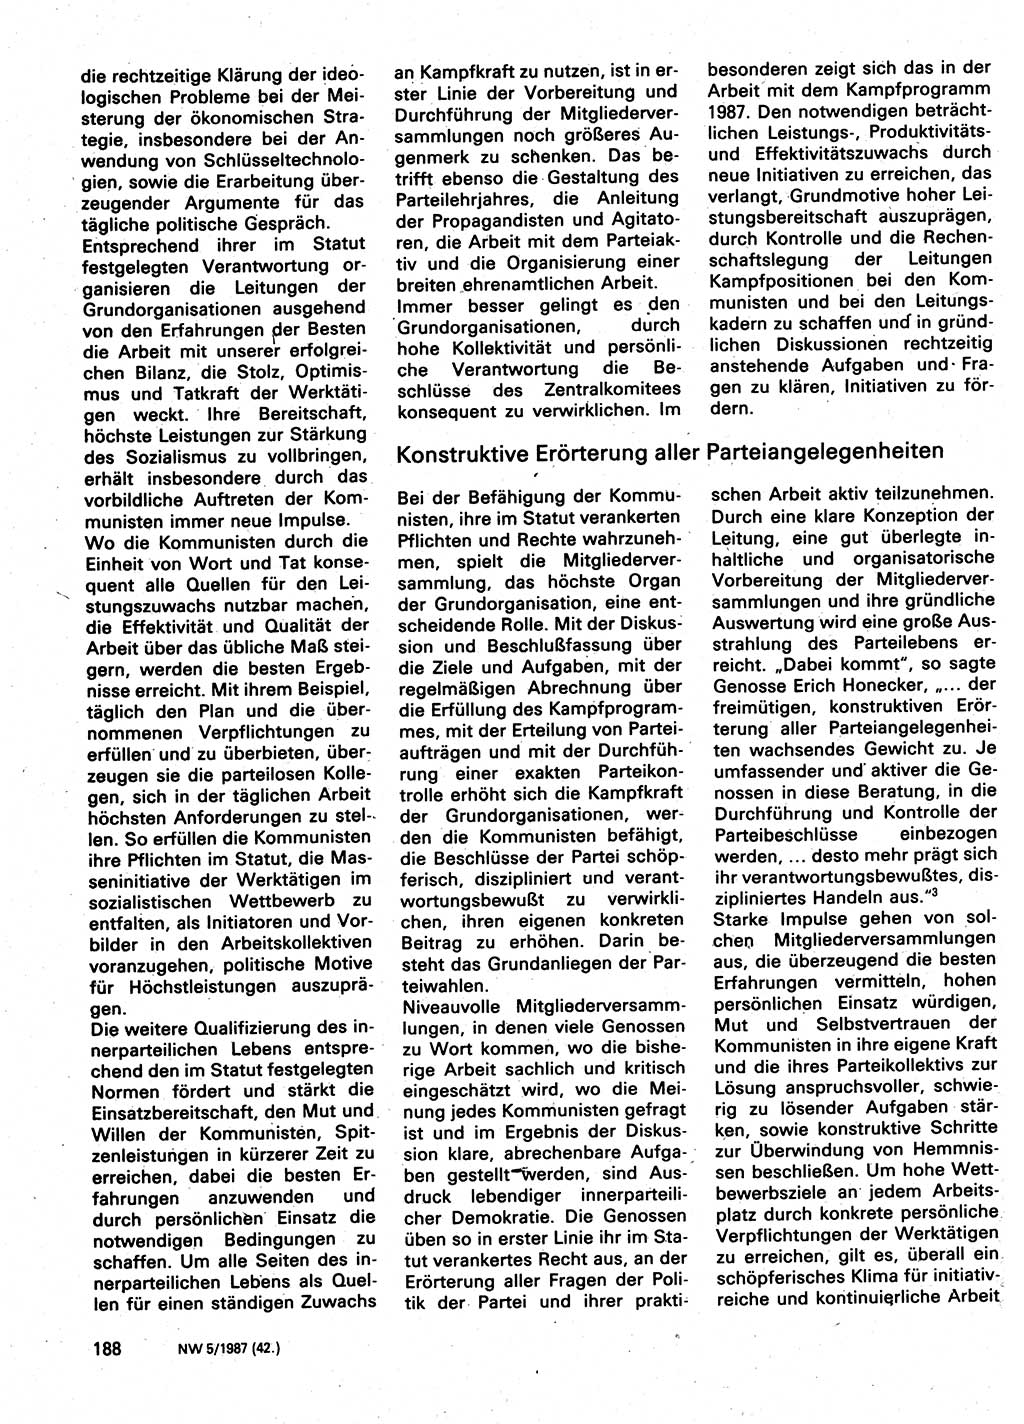 Neuer Weg (NW), Organ des Zentralkomitees (ZK) der SED (Sozialistische Einheitspartei Deutschlands) für Fragen des Parteilebens, 42. Jahrgang [Deutsche Demokratische Republik (DDR)] 1987, Seite 188 (NW ZK SED DDR 1987, S. 188)